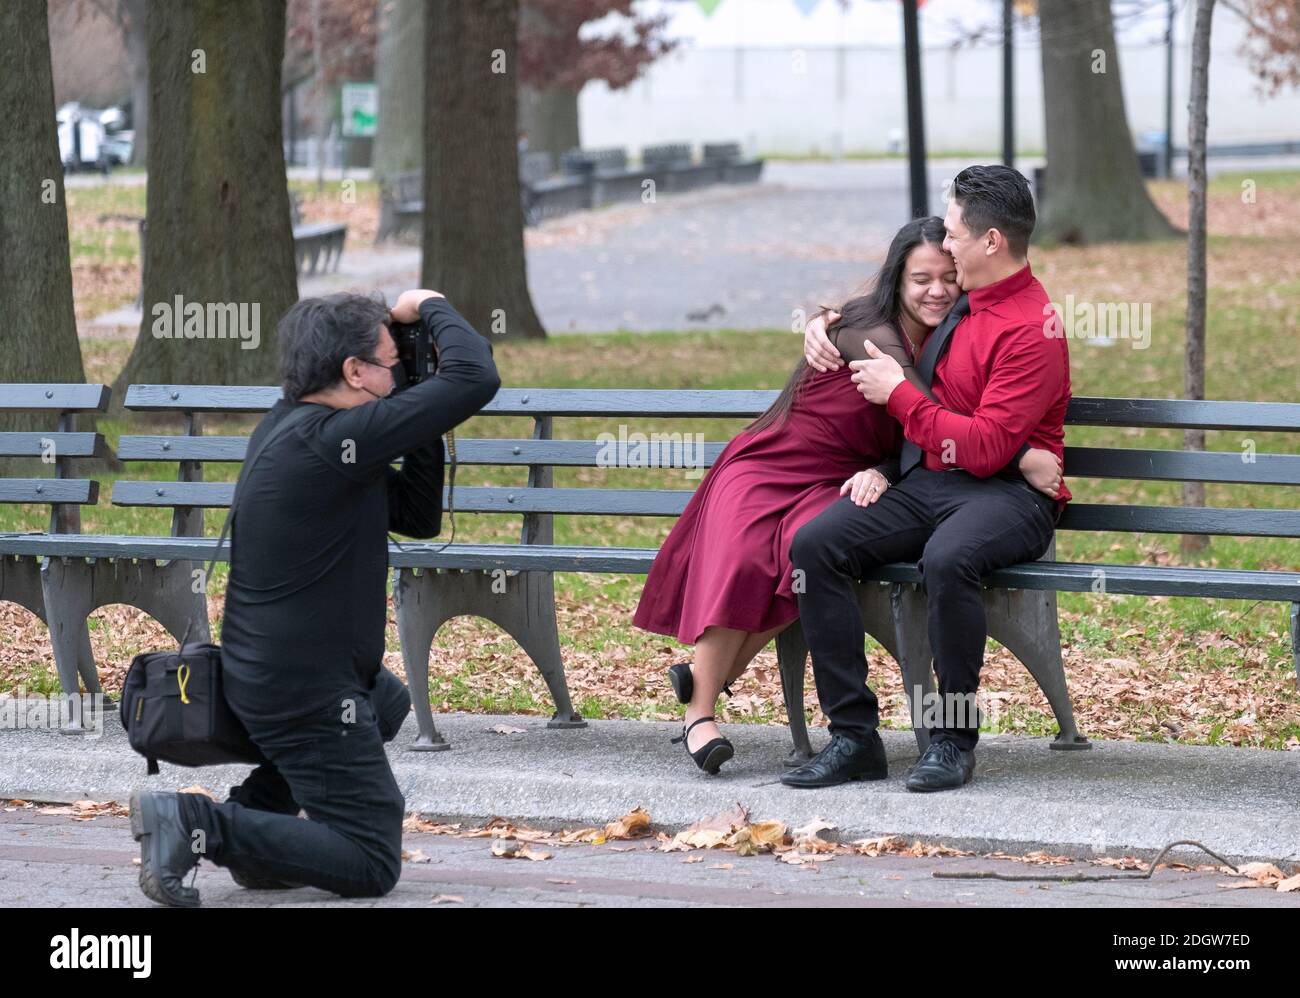 Un jeune couple se fait un rire lors d'une séance de photo, peut-être pour célébrer leur engagement. À Flushing Meadows Park, Queens, New York. Banque D'Images